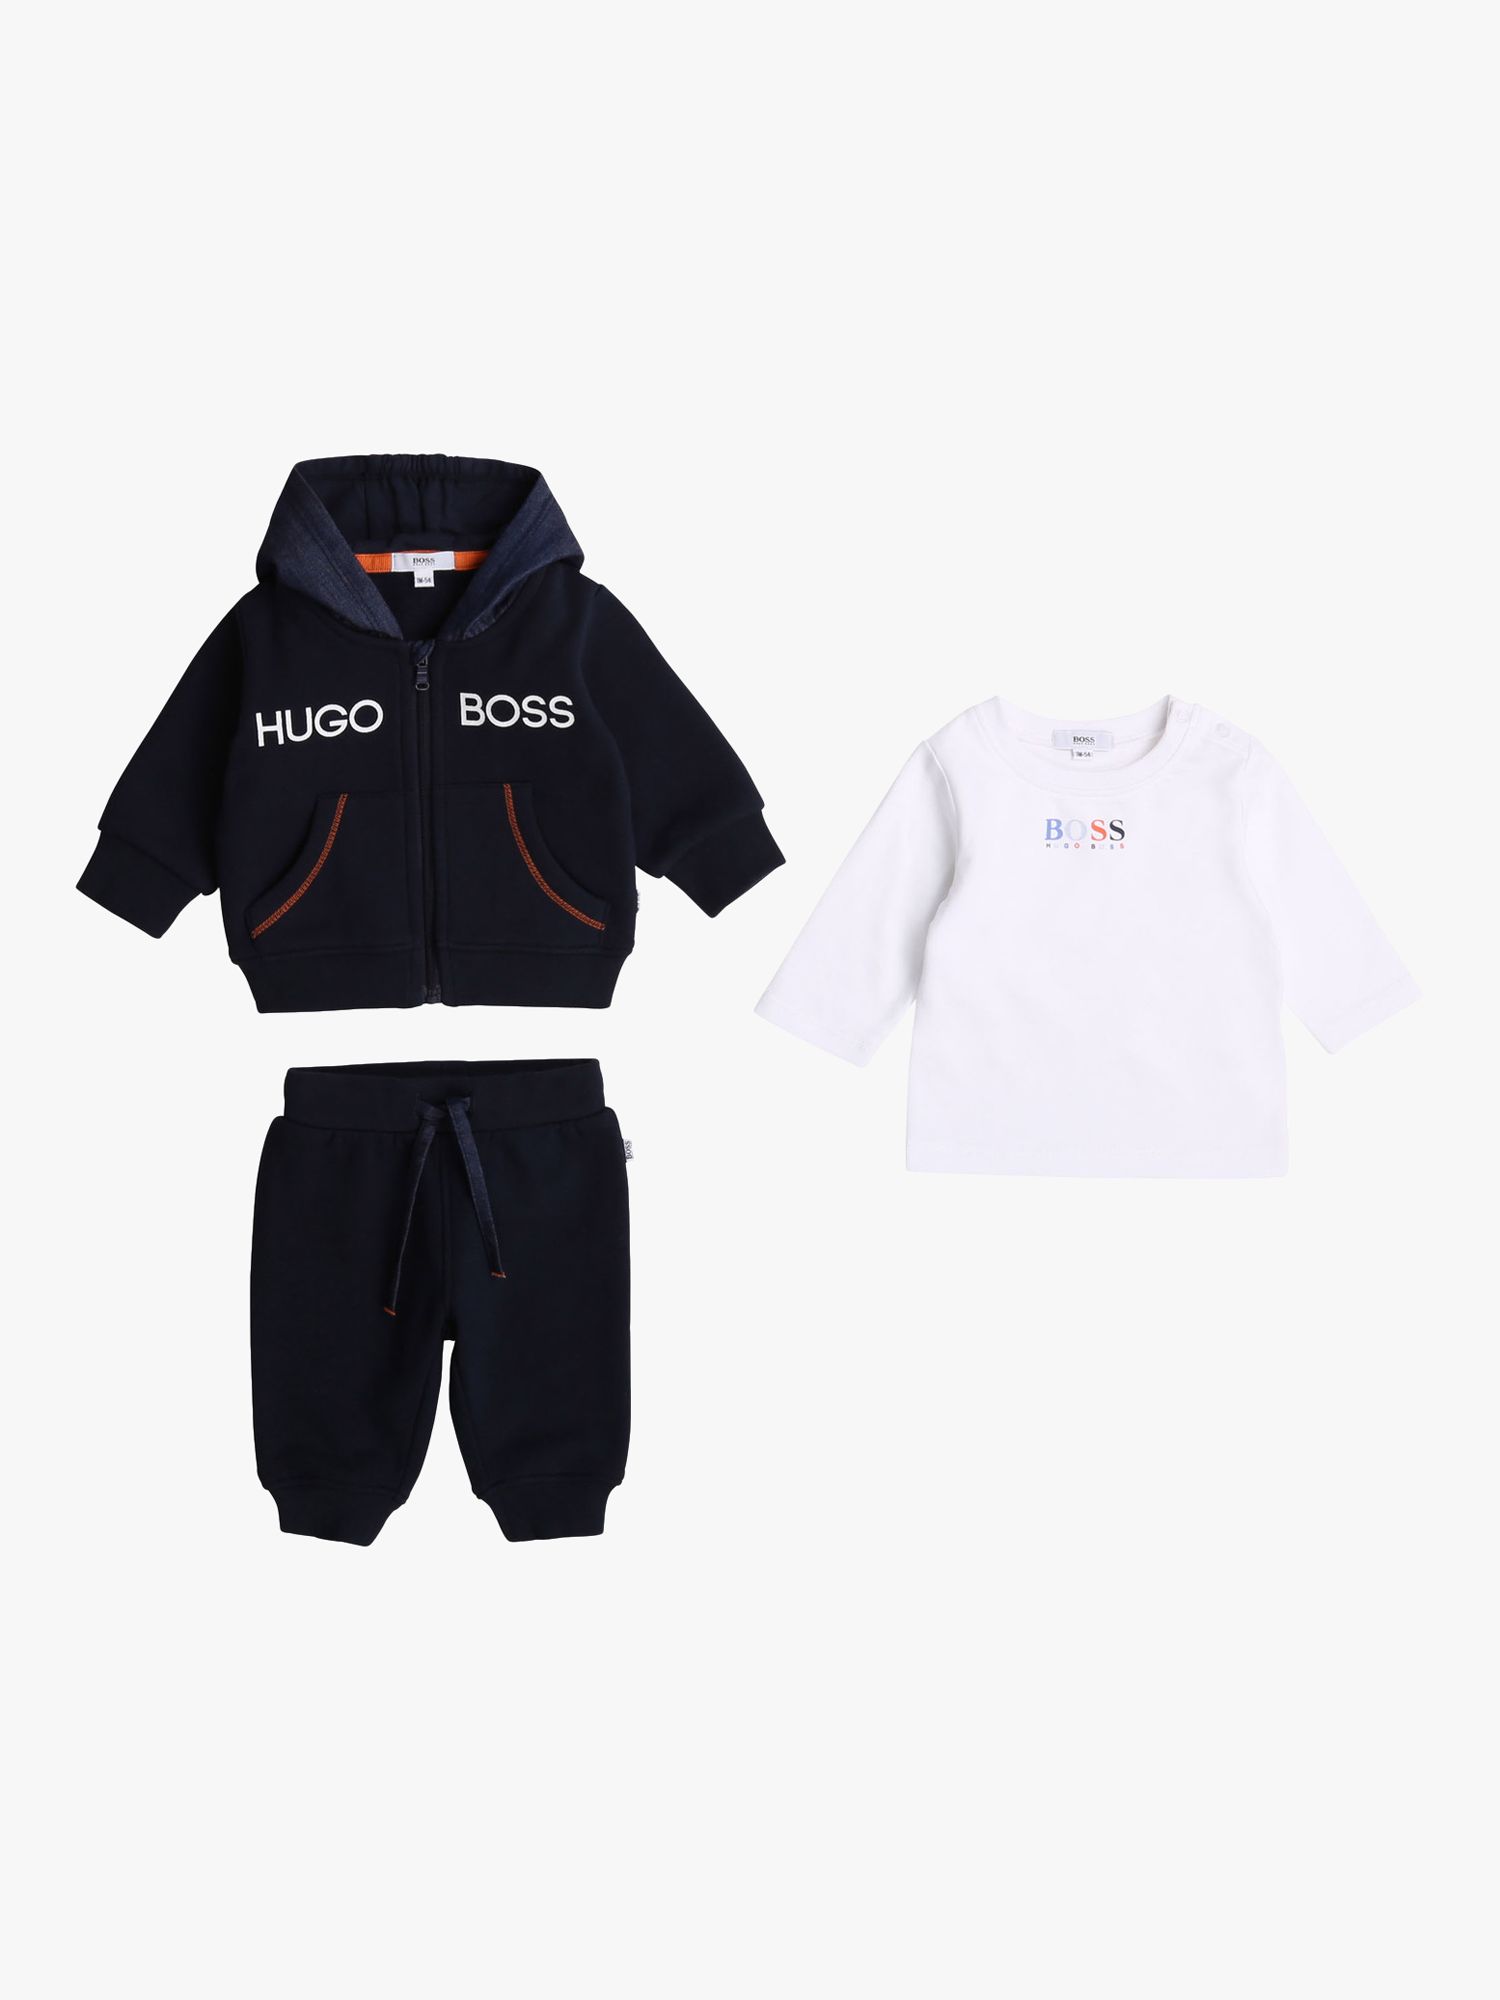 hugo boss for babies